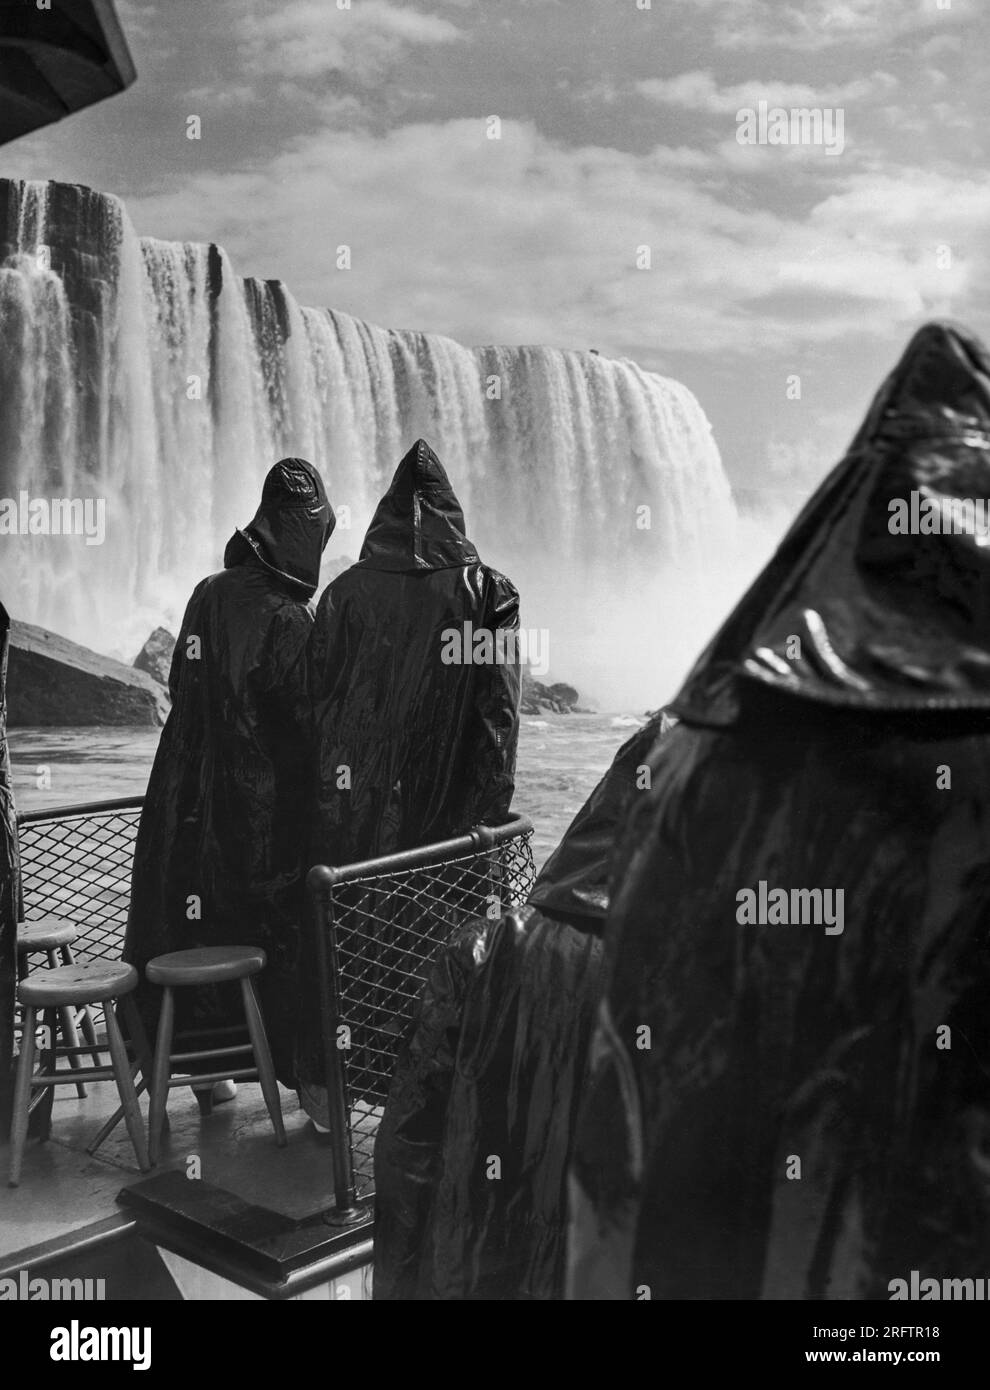 Cascate del Niagara, New York: 17 maggio 1937 due sposi in luna di miele, immersi in pelli di petrolio per evitare di essere inzuppati dallo spray, guardano verso le maestose cascate Horseshoe dal ponte del tour in barca "Maid of the Mist" durante il suo primo viaggio del 1937. Foto Stock